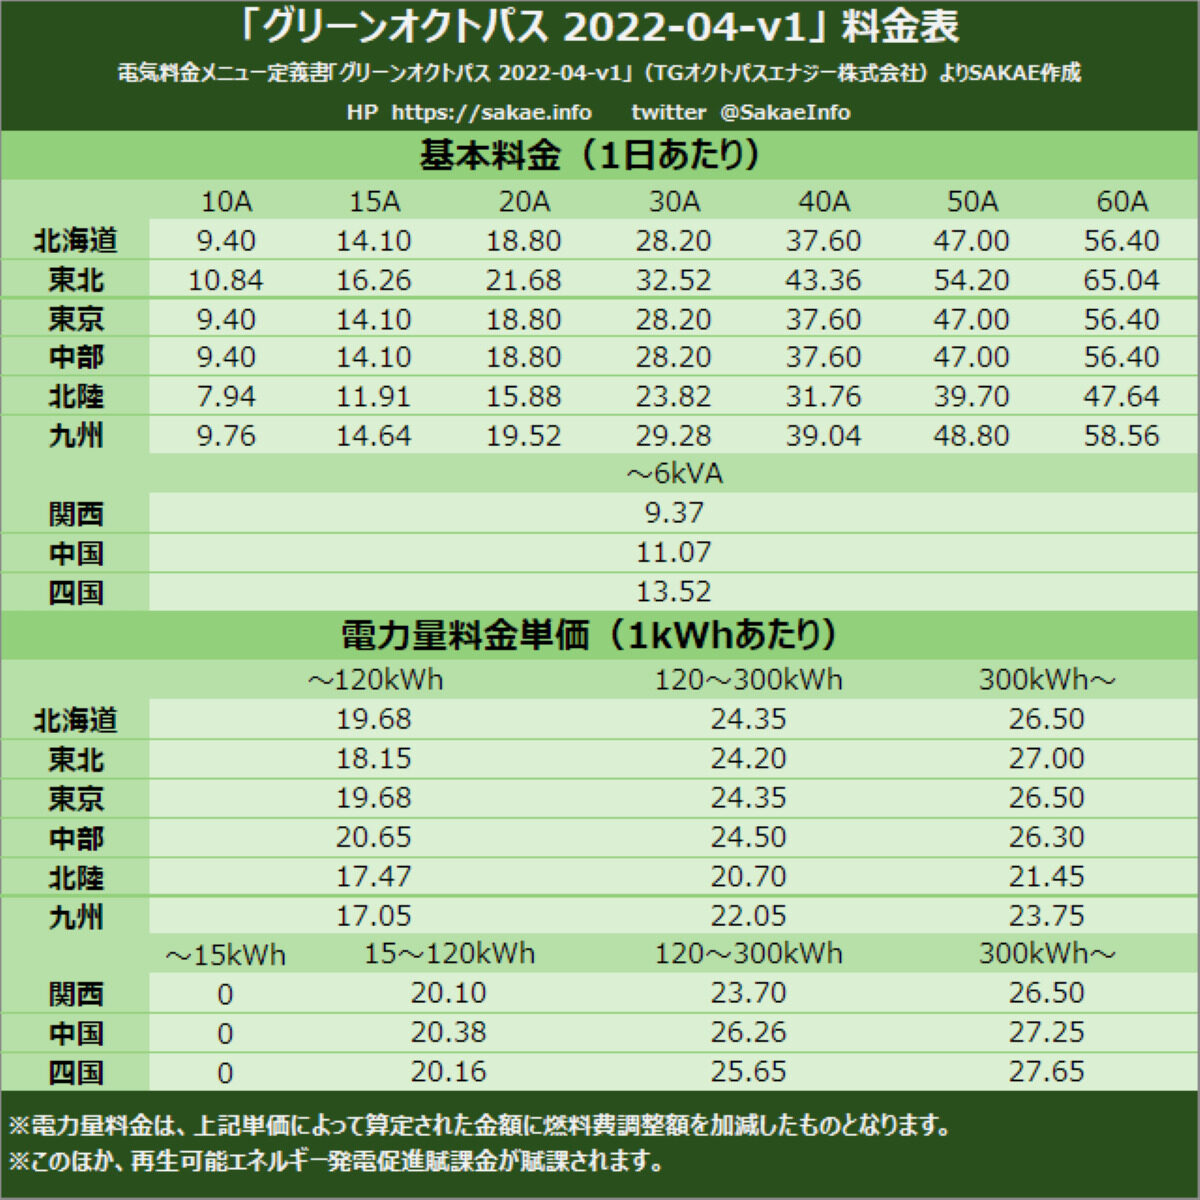 「グリーンオクトパス 2022-04-v1」料金表